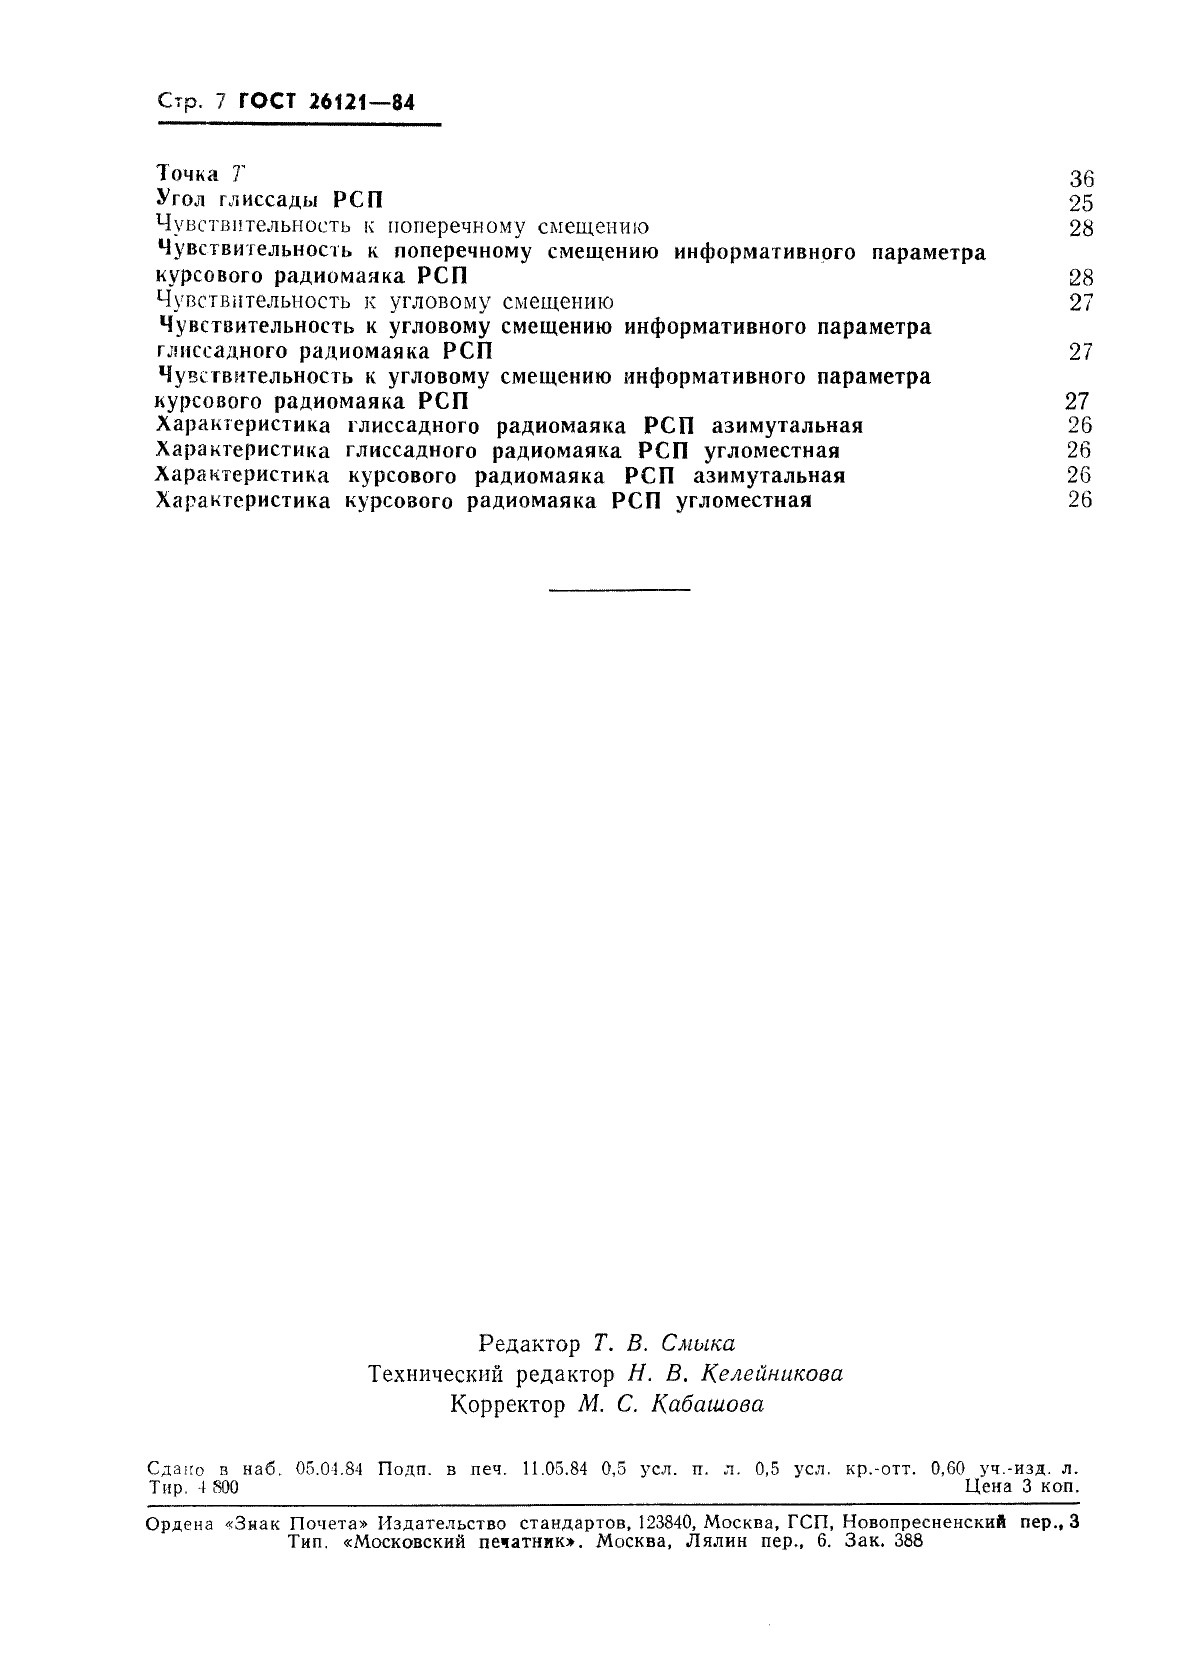 ГОСТ 26121-84 Системы инструментального захода самолетов на посадку радиомаячные. Термины и определения (фото 8 из 8)